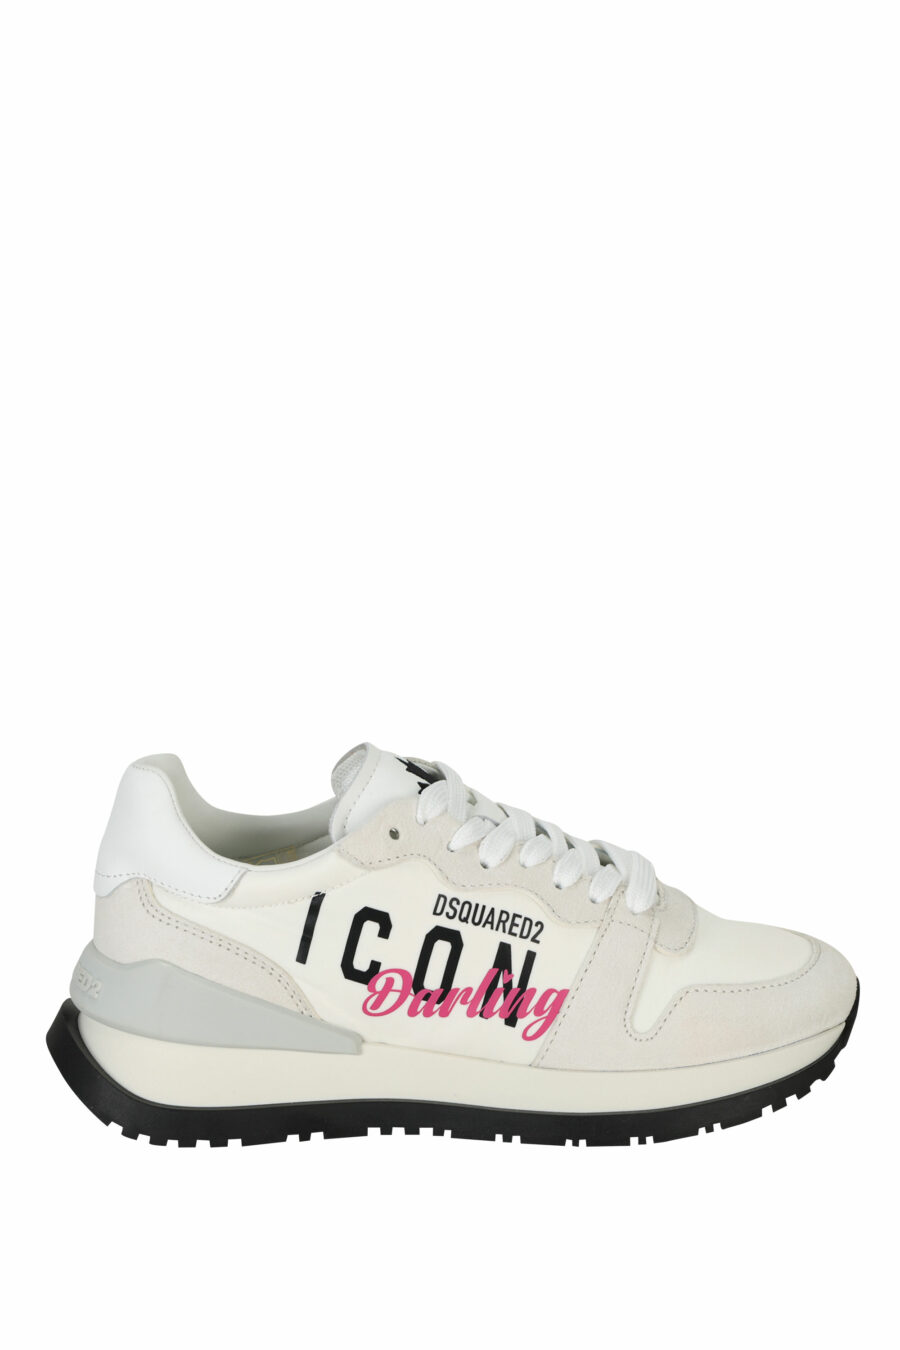 Zapatillas blancas con logo "icon darling" - 8055777310106